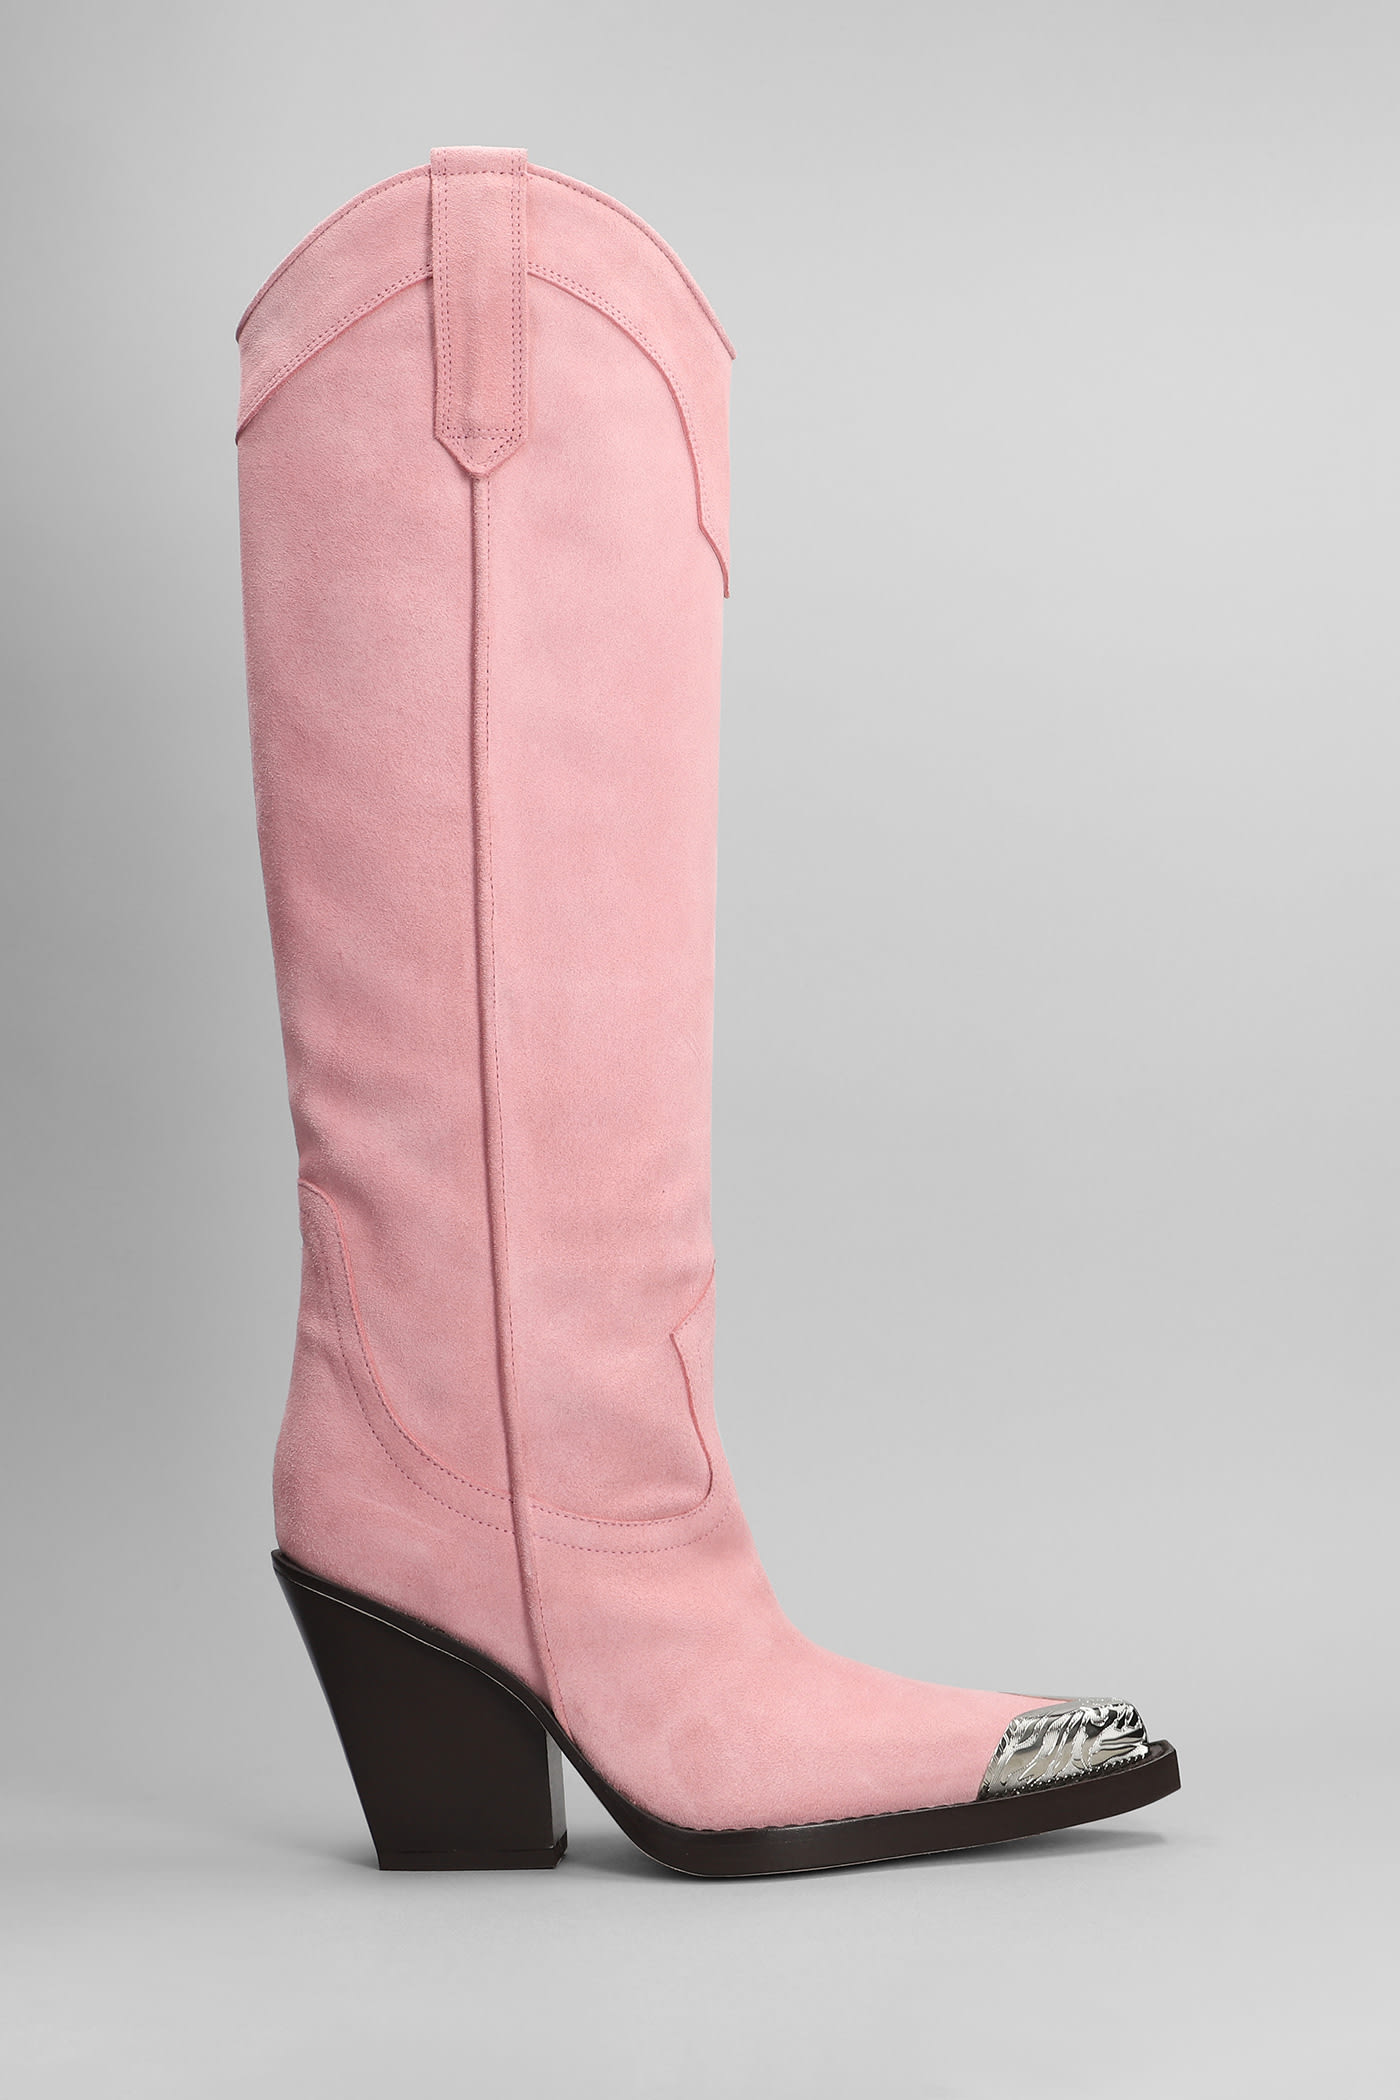 El Dorado Texan Boots In Rose-pink Suede